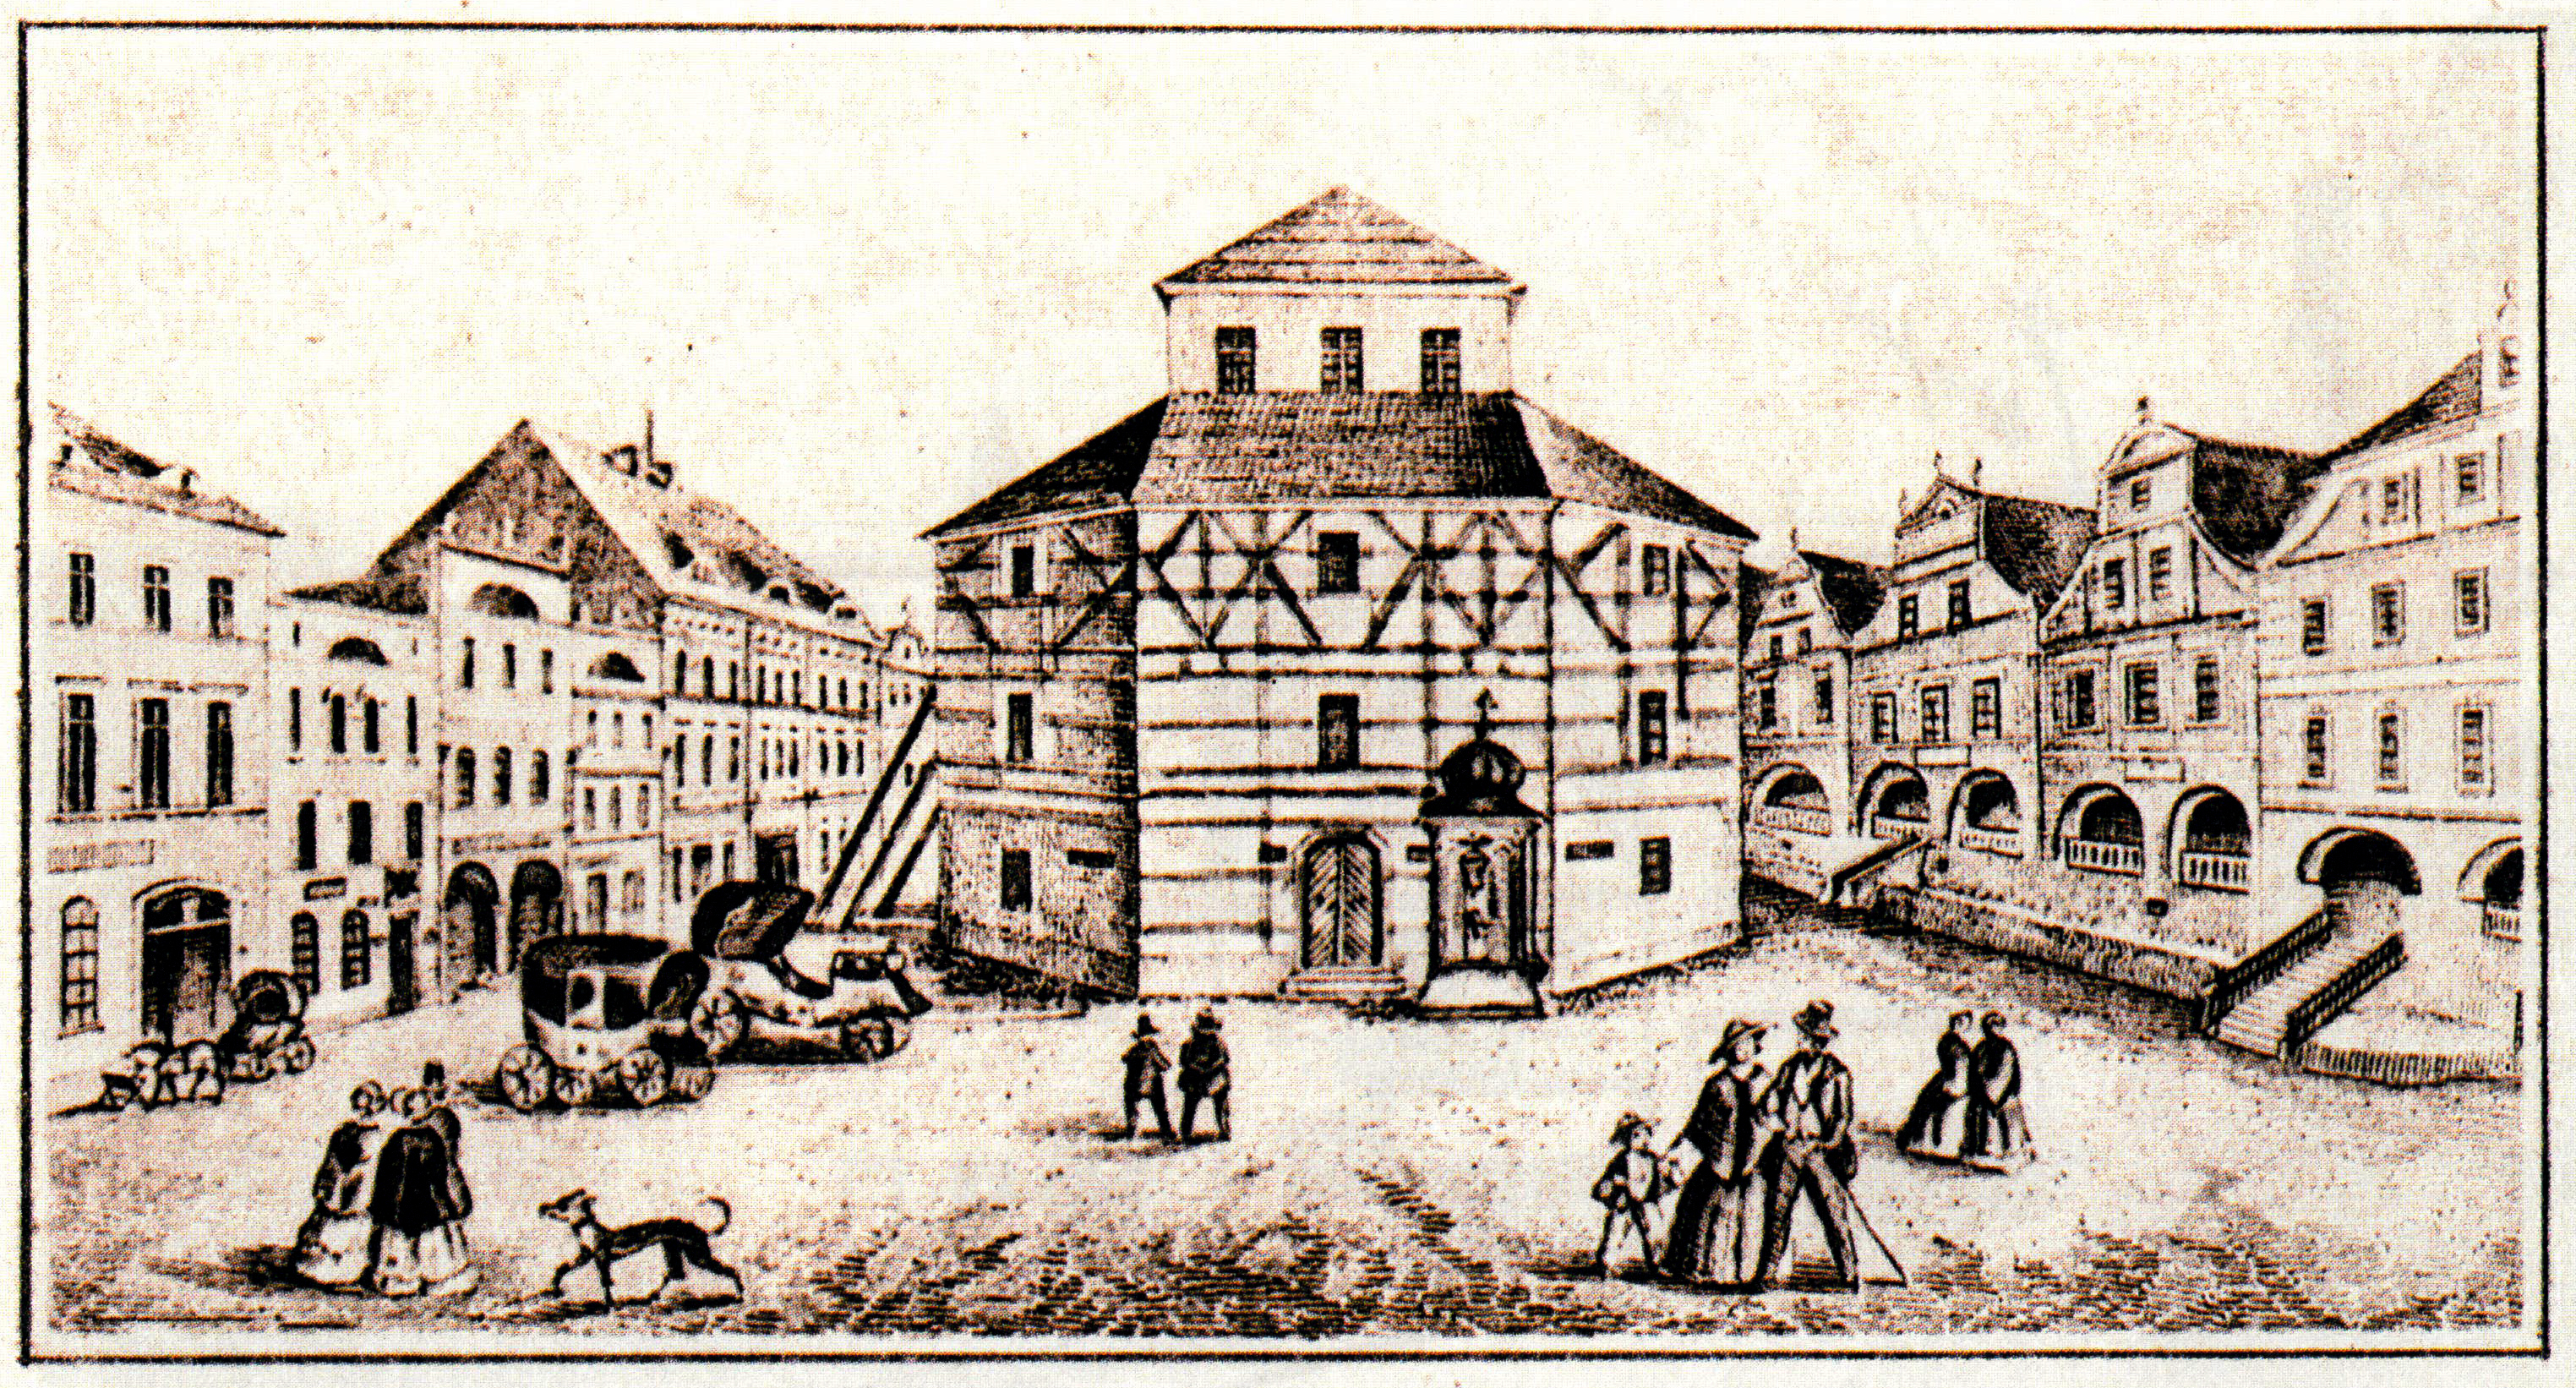 rycina na, której widnieje pierwszy kościół ewangelicki o konstrukcji szachulcowej, który został wzniesiony w 1742 r.